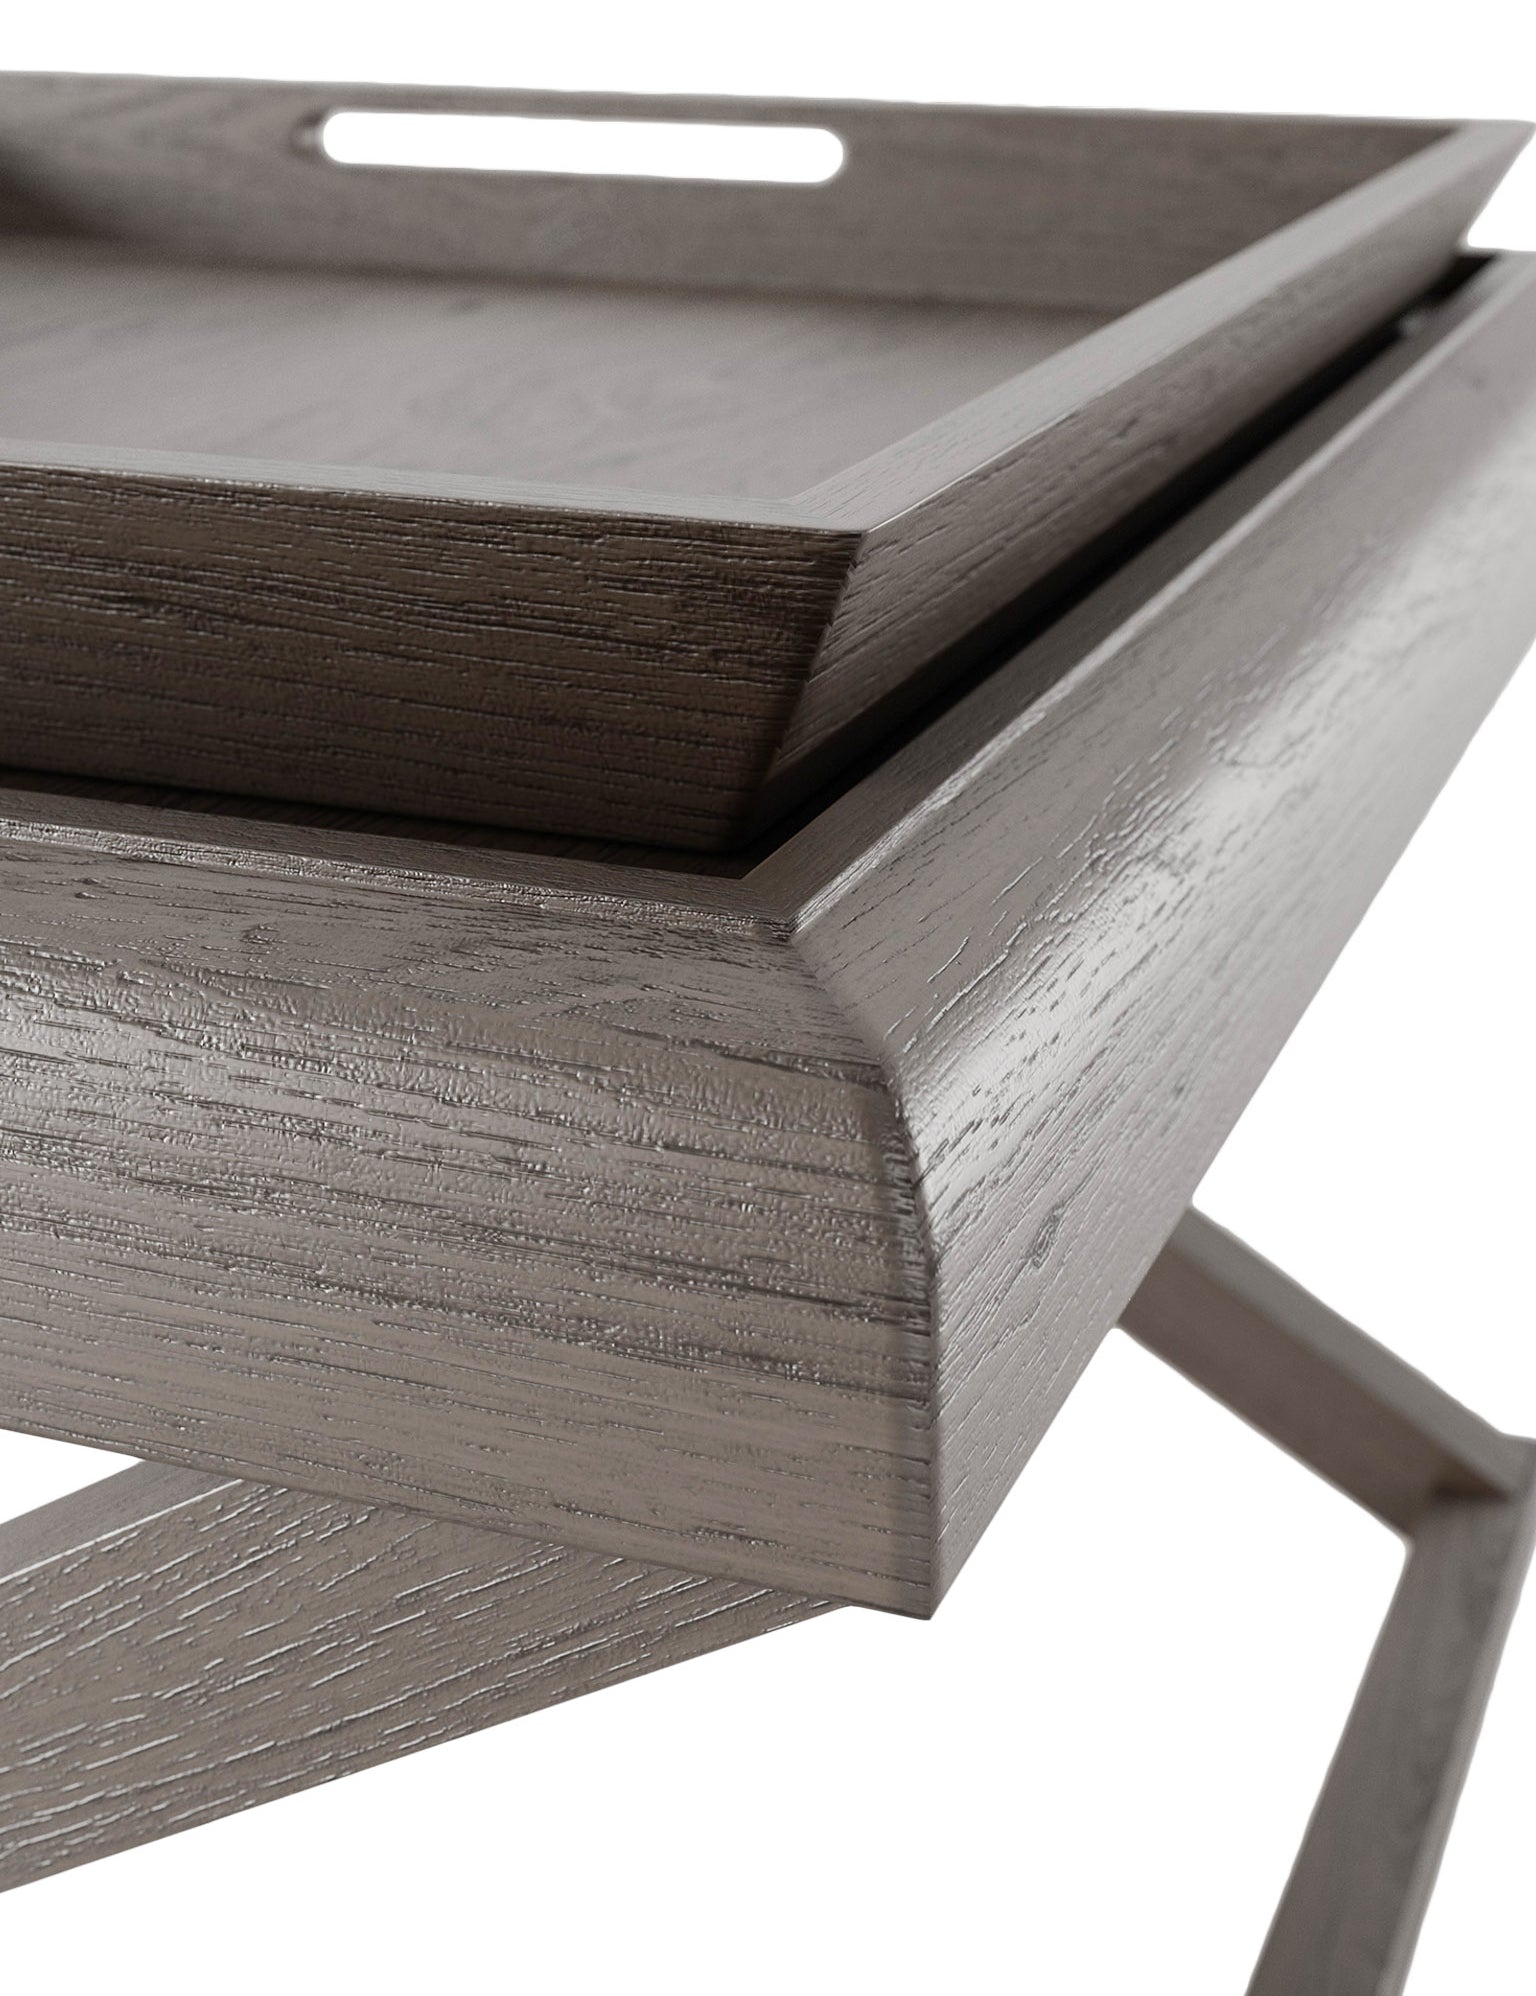 Wooden oak crossed legged end table